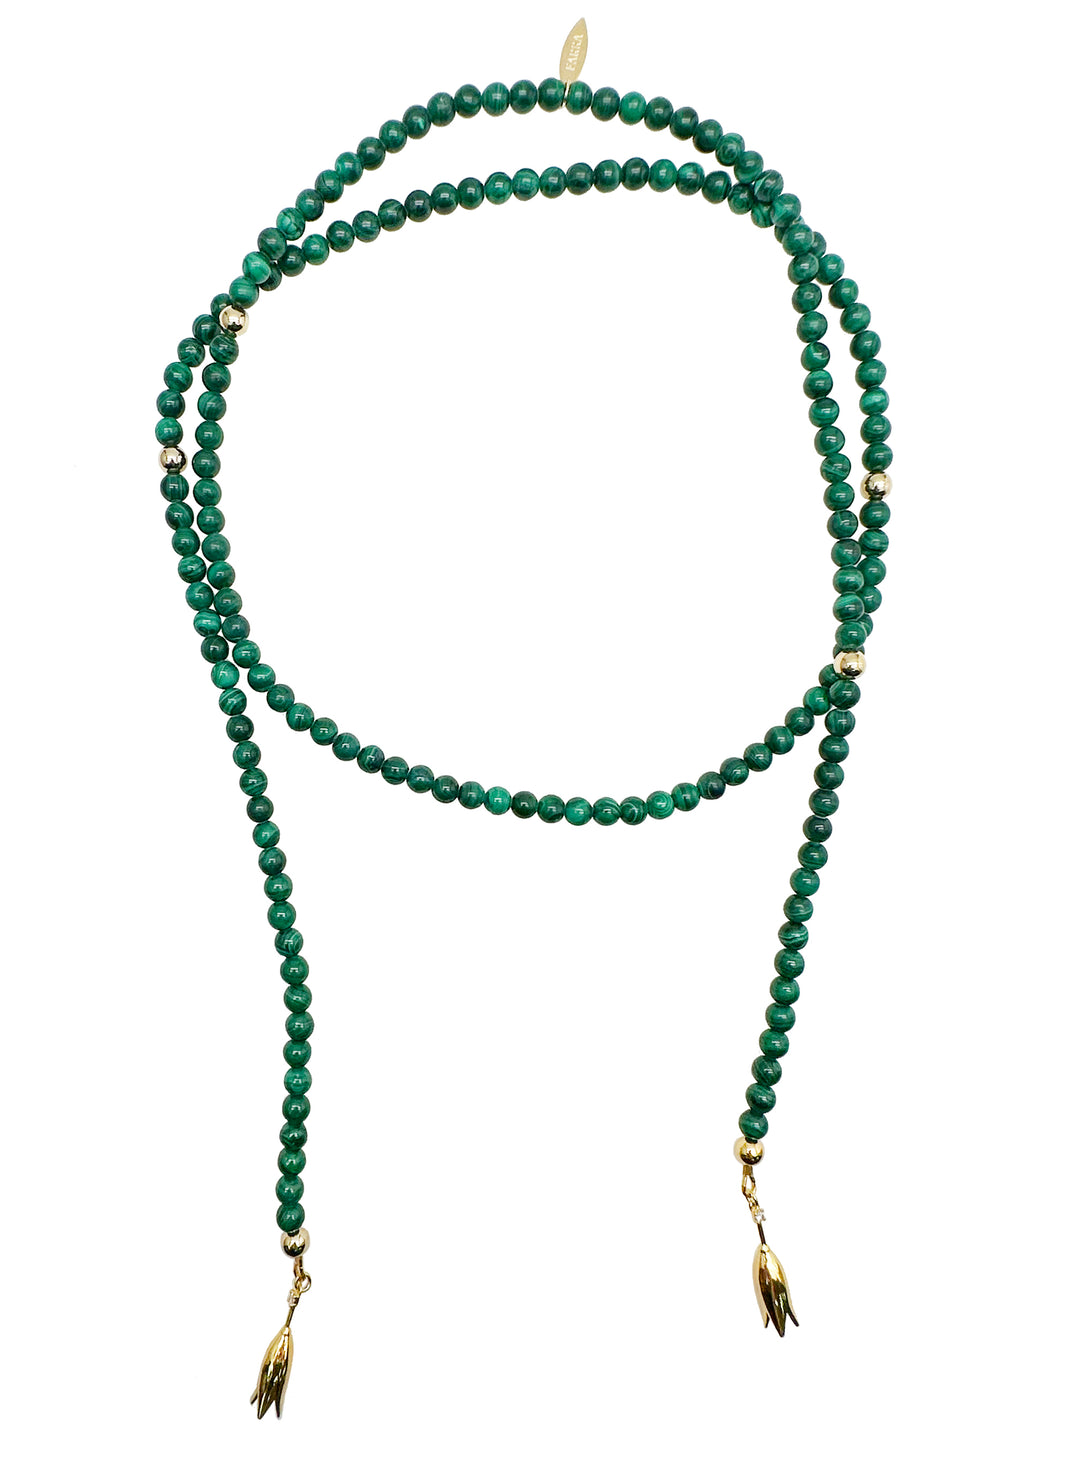 Malachite Open Ended Versatile Necklace KN031 - FARRA